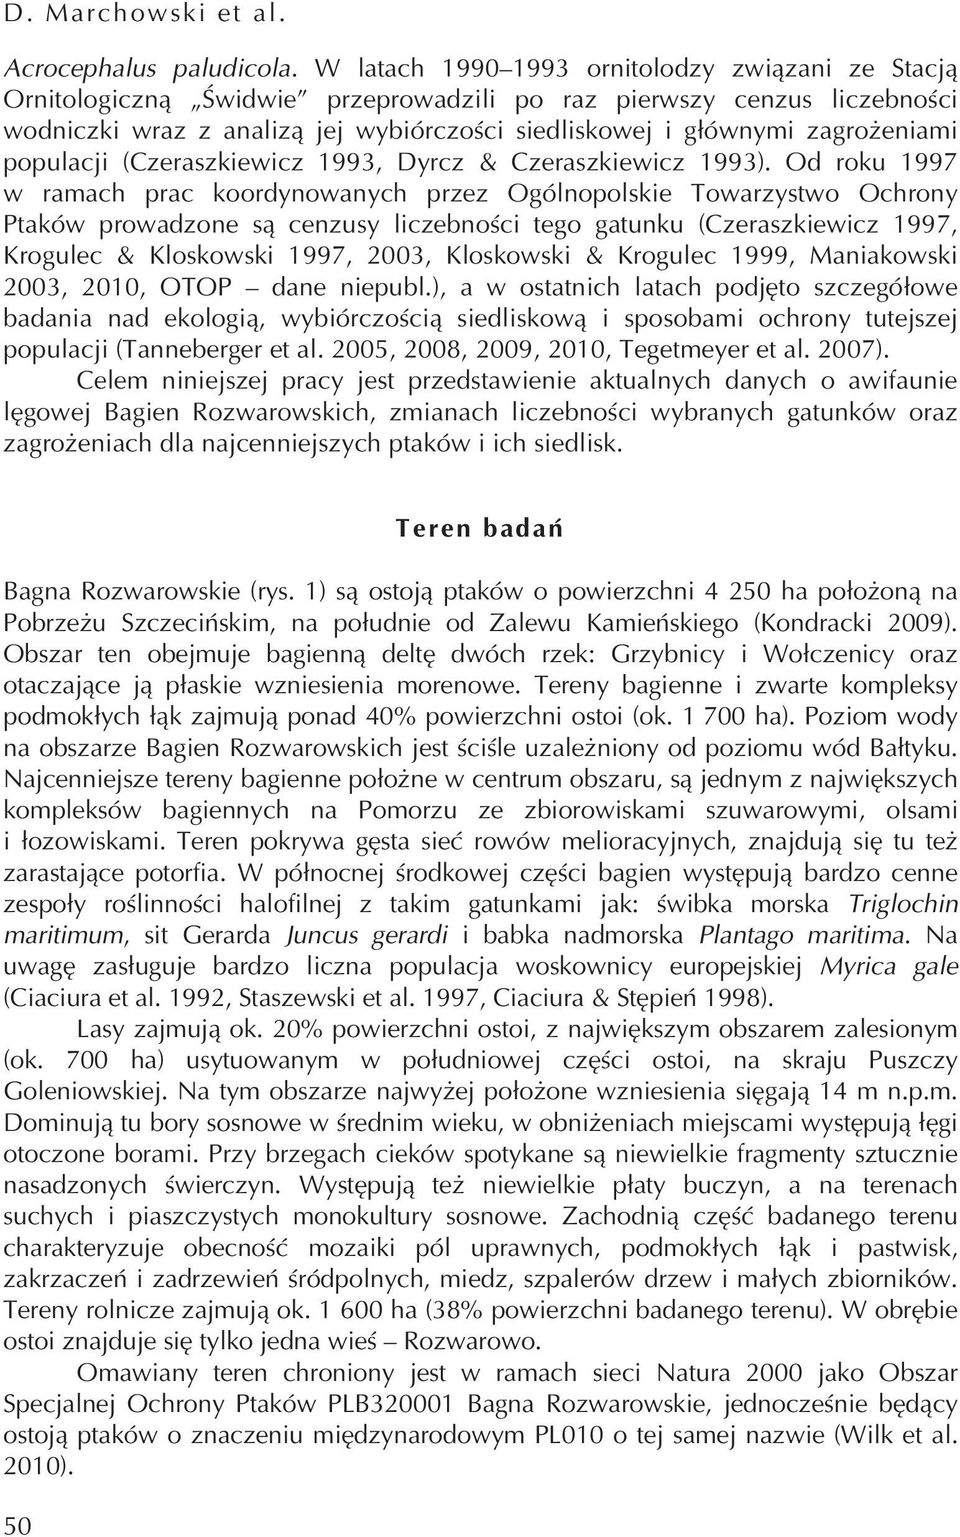 zagrożeniami populacji (Czeraszkiewicz 1993, Dyrcz & Czeraszkiewicz 1993).